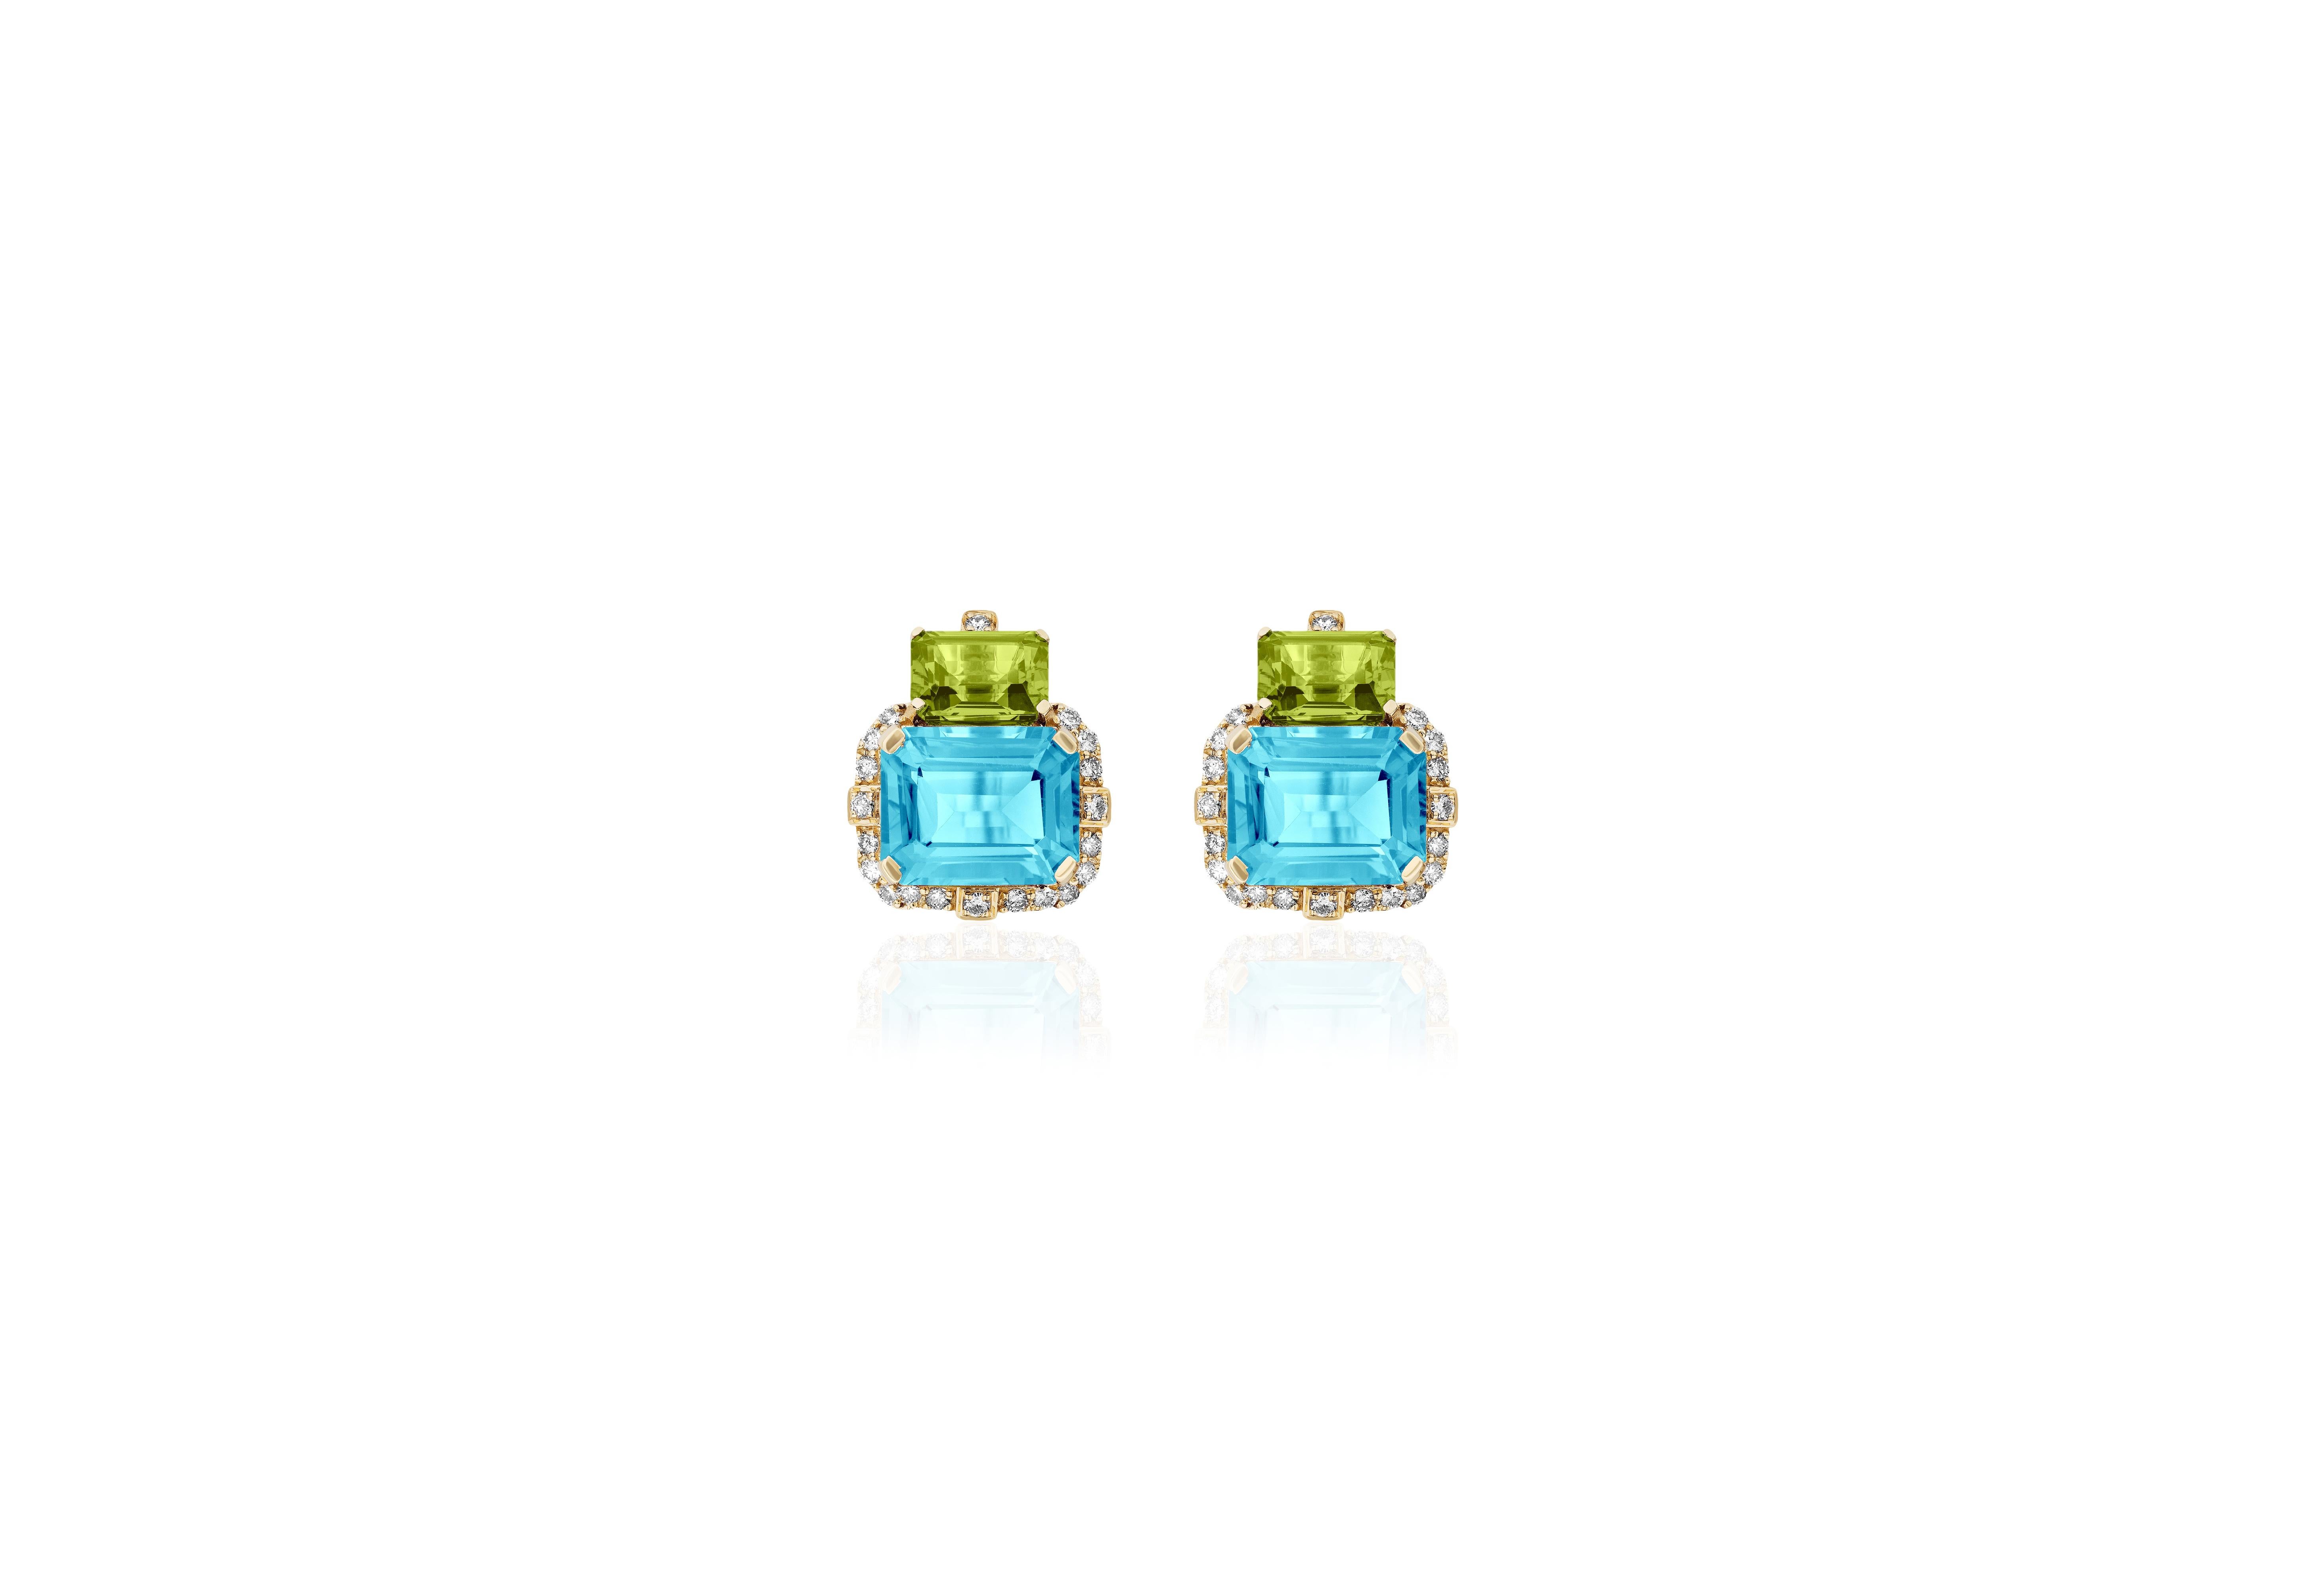 Voici les captivantes boucles d'oreilles 2 pierres péridot et topaze bleue taille émeraude avec diamants en or jaune 18 carats, une création remarquable de l'exquise Collection 'Gossip'. Fabriquées avec une attention méticuleuse aux détails, ces